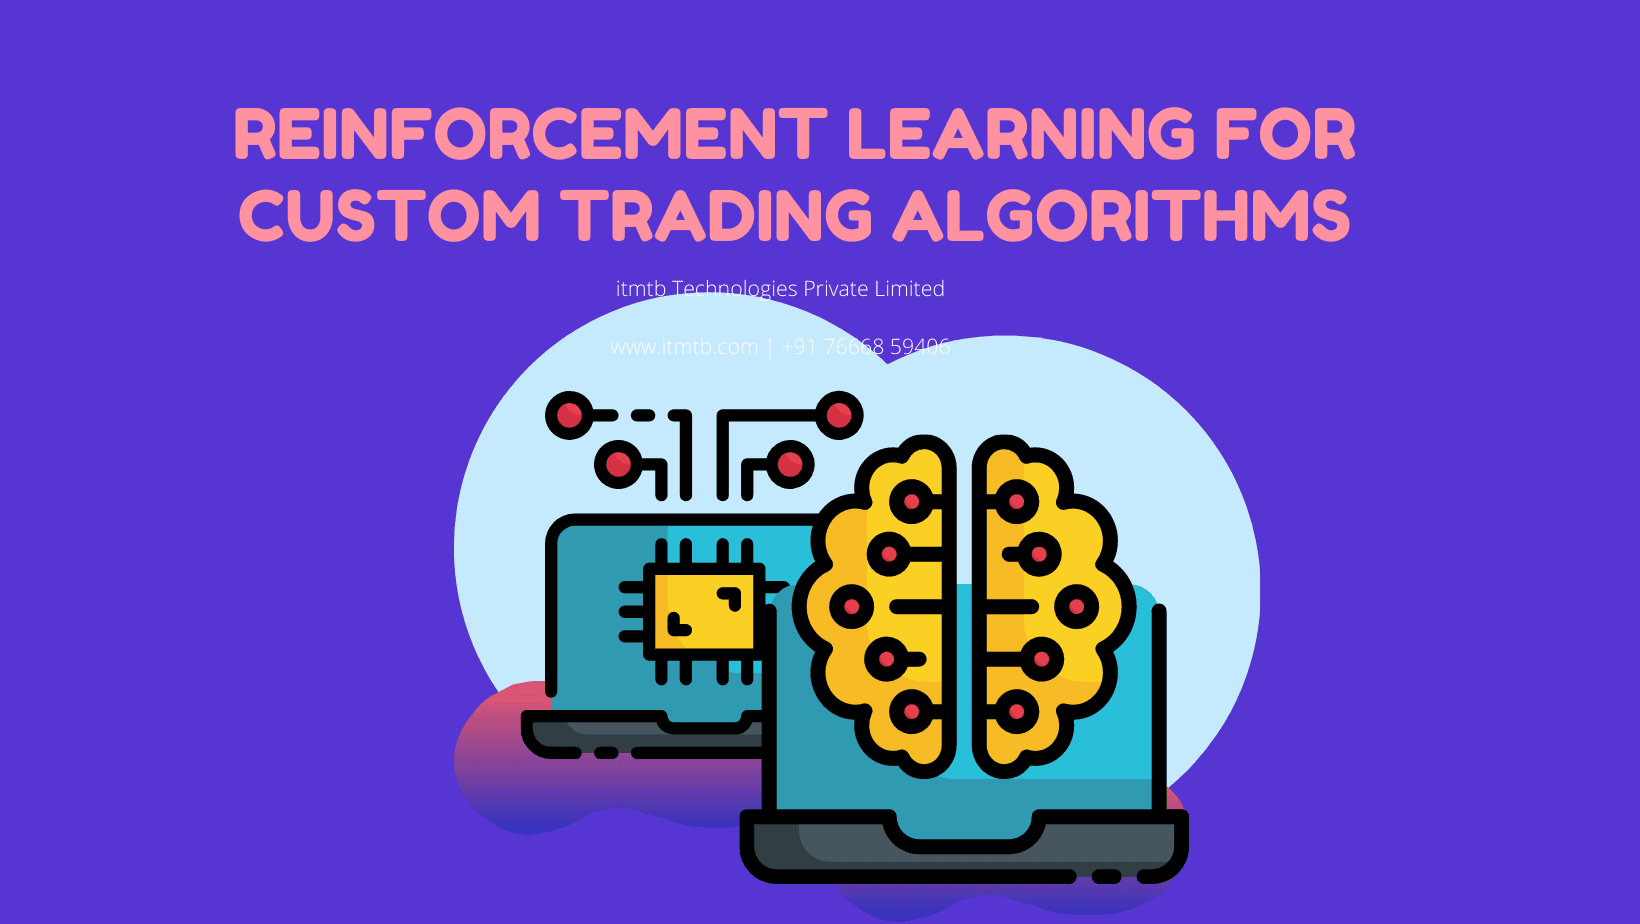 Reinforcement learning for custom trading algorithms.